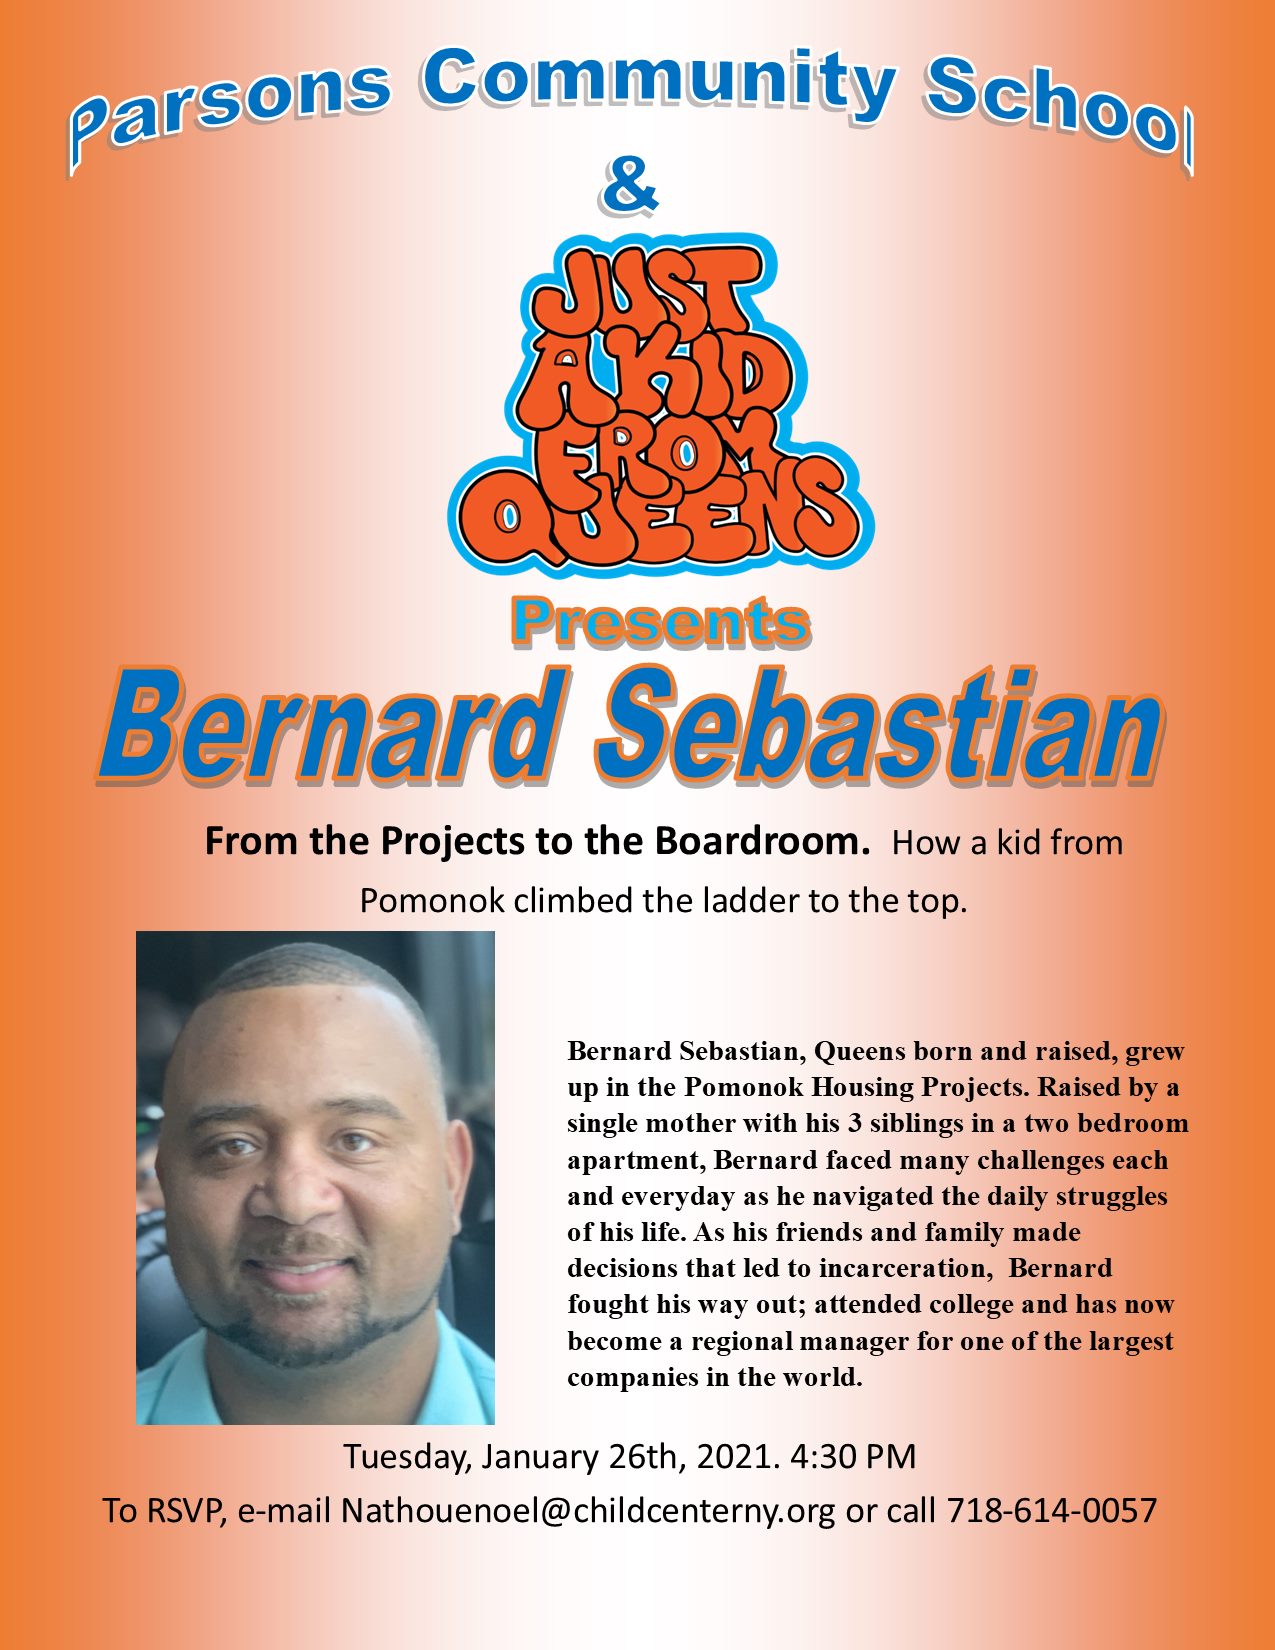 Bernard Sebastian